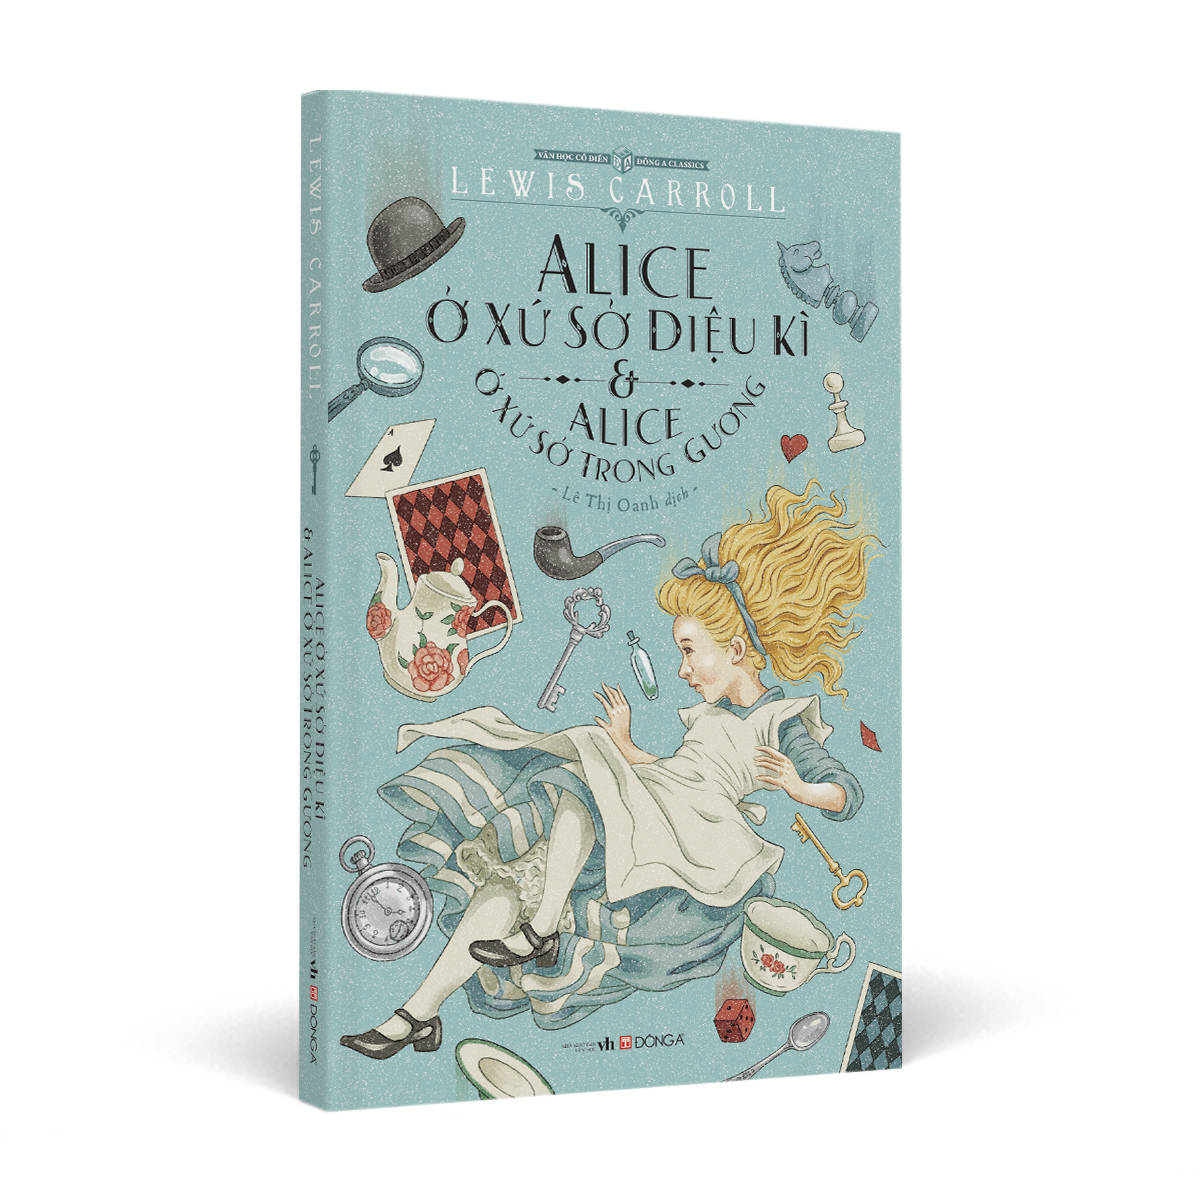 Alice ở xứ sở diệu kì & Alice ở xứ sở trong gương (Khổ 16 x 24 bìa xanh)